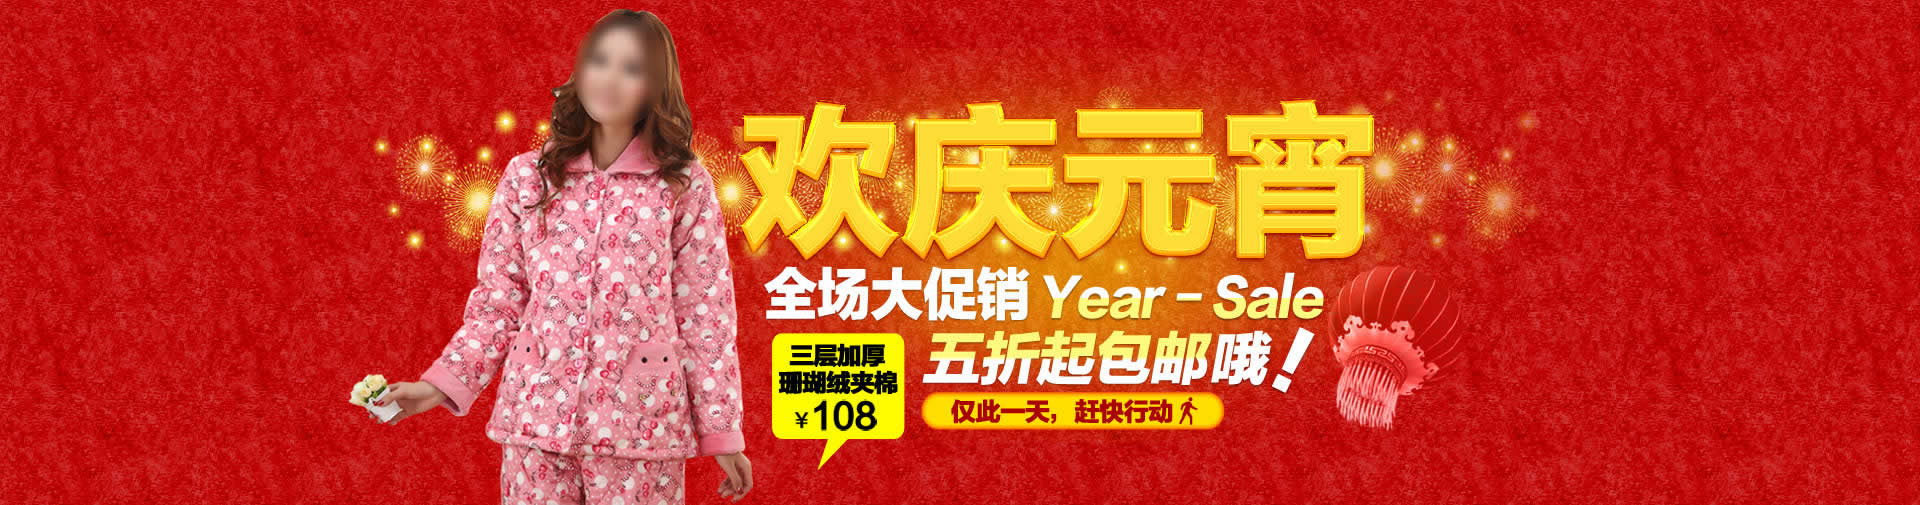 元宵节大红喜庆1920节日促销海报素材全屏背景男女服装psd图片素材免费下载